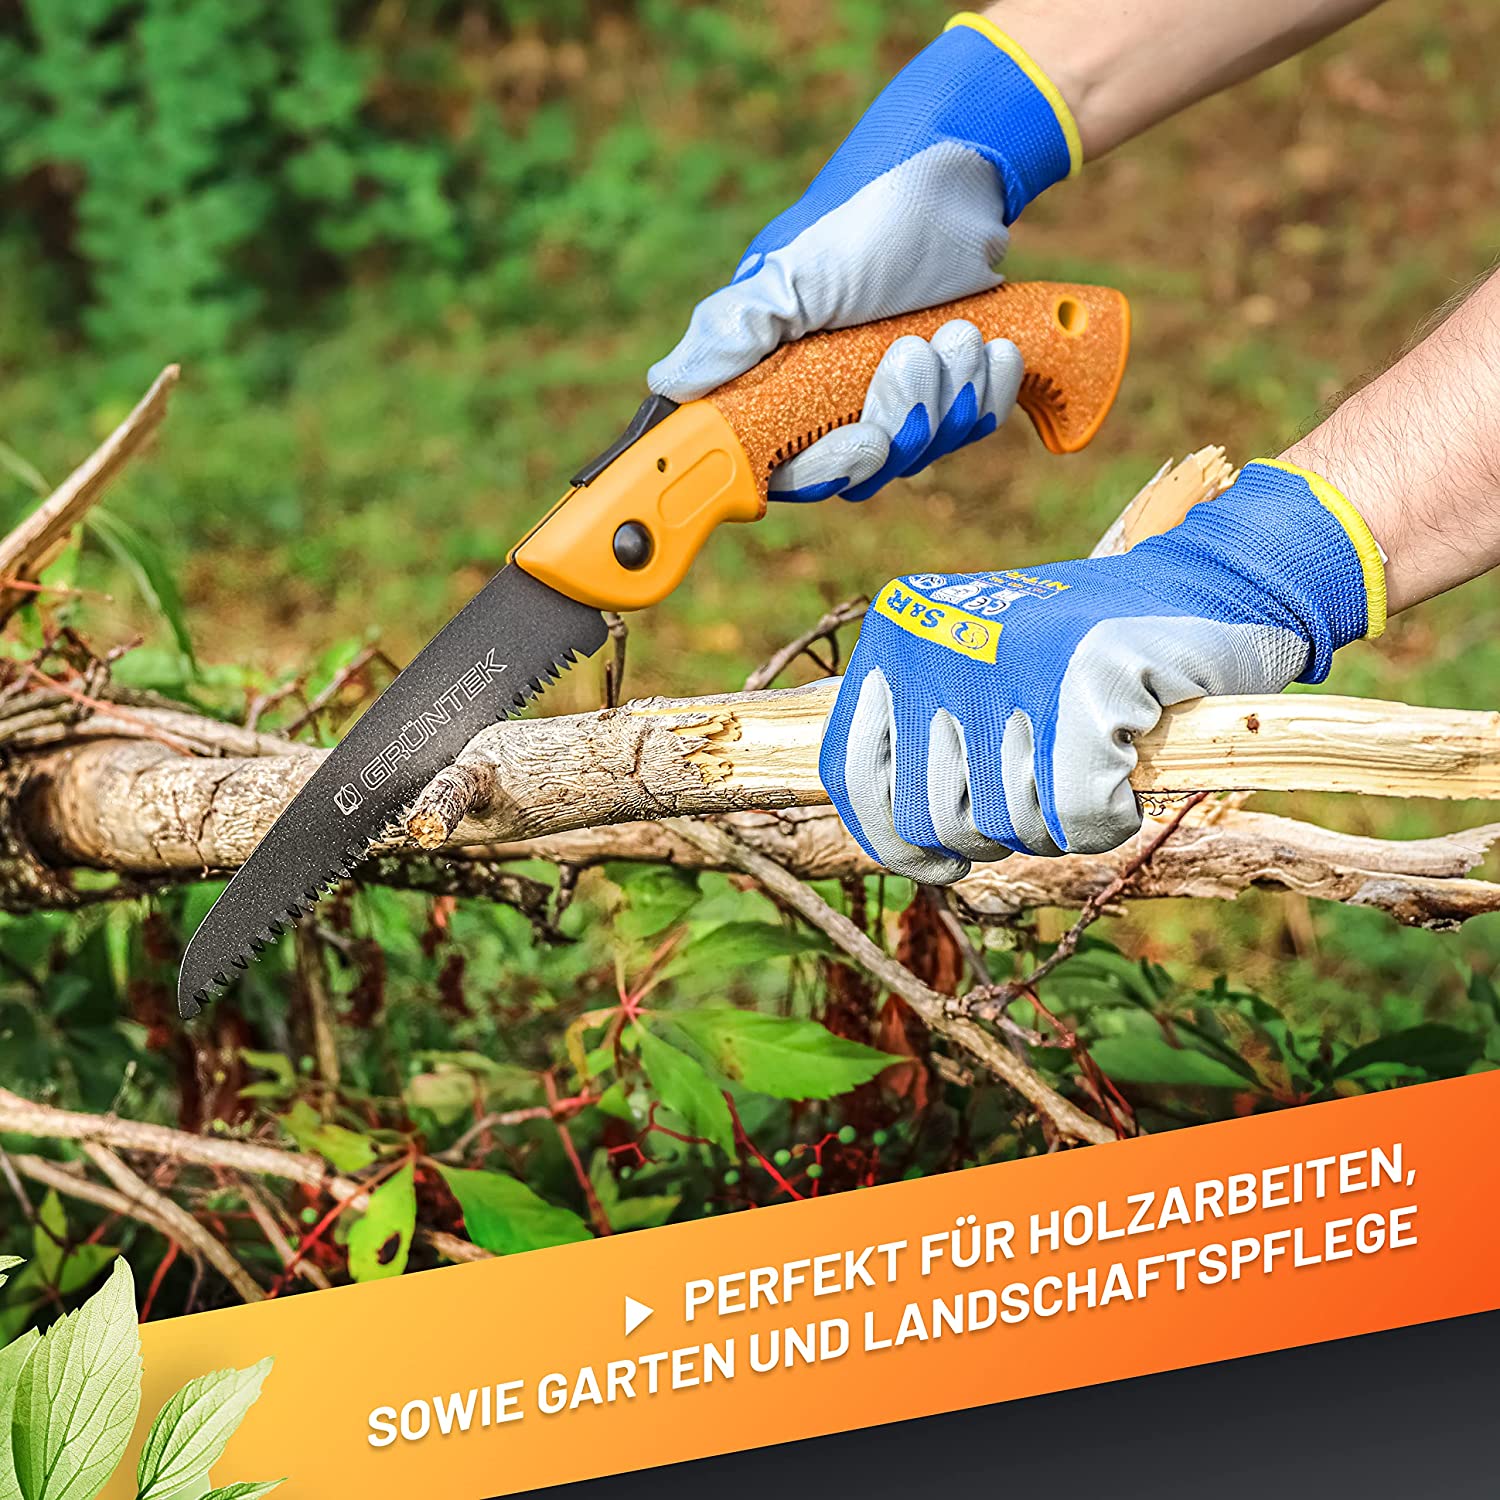 اره  باغبانی تاشو 180 میلیمتری کمپانی گرانتک  مدل zander -ساخت کمپانی گرانتک آلمان ( مناسب برای هرس و طبیعت گردی )